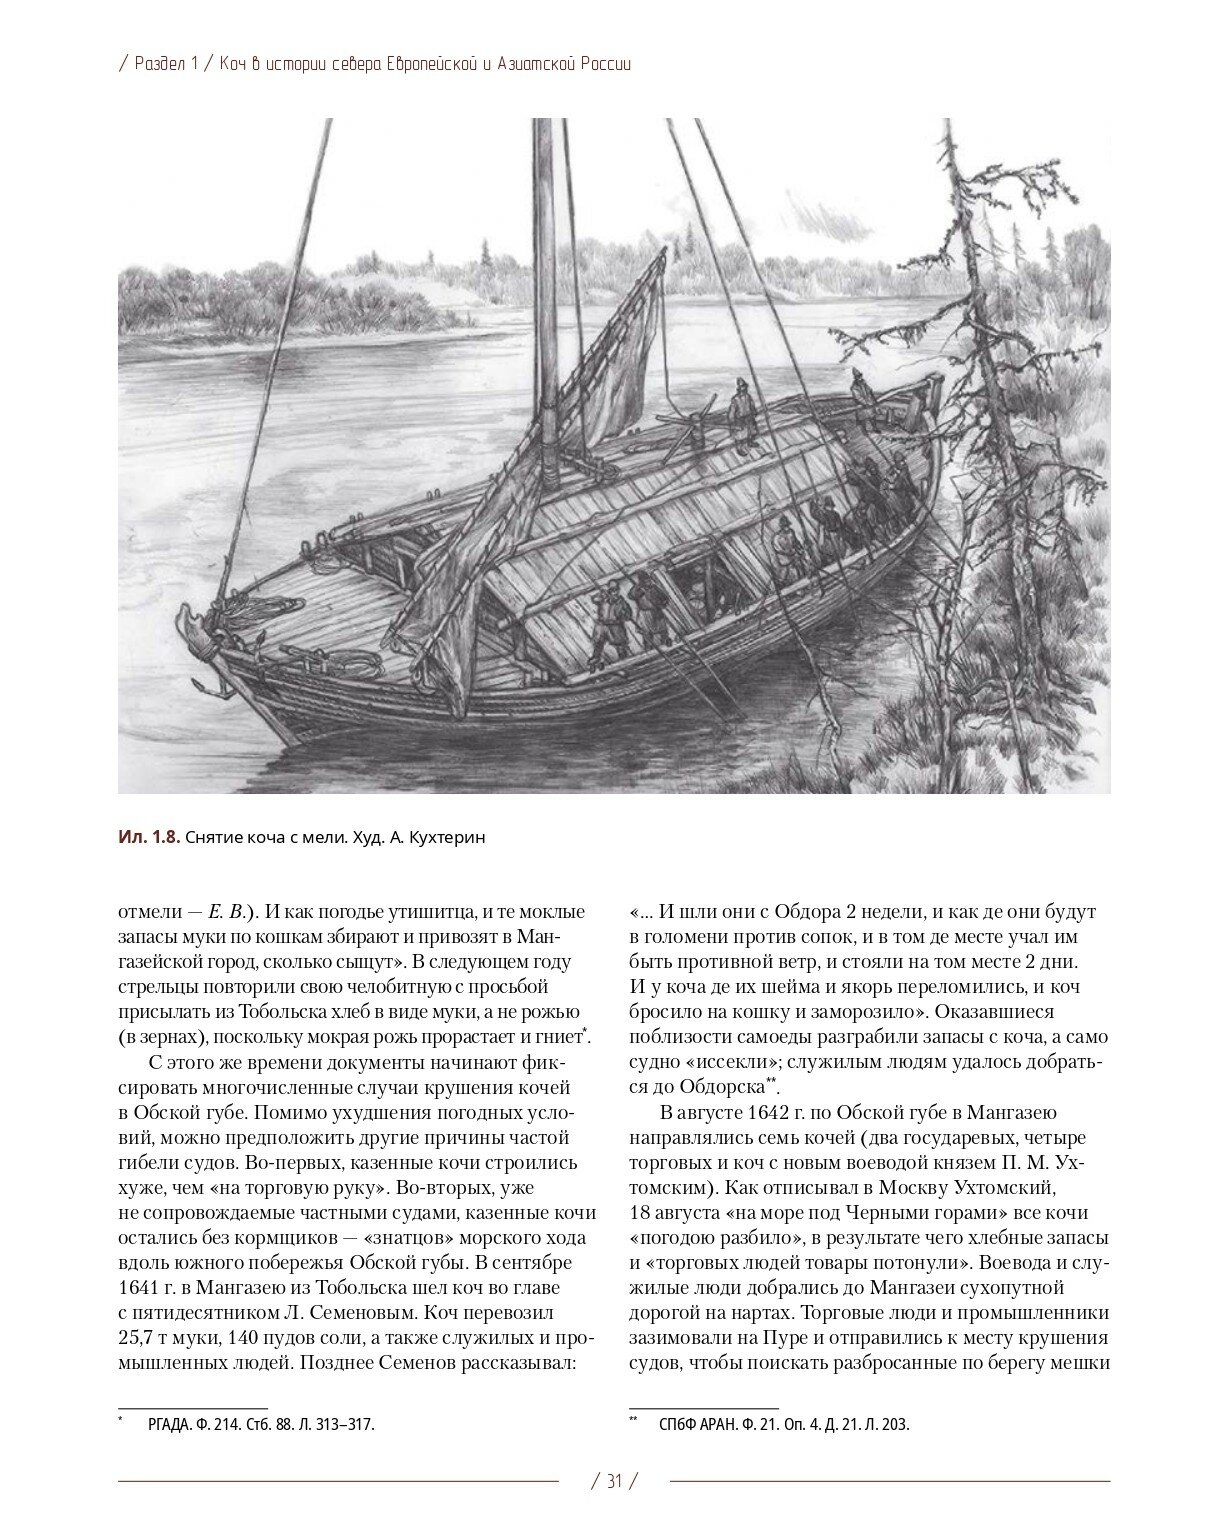 Коч — судно полярных мореходов XVII века. Новые данные - фото №6